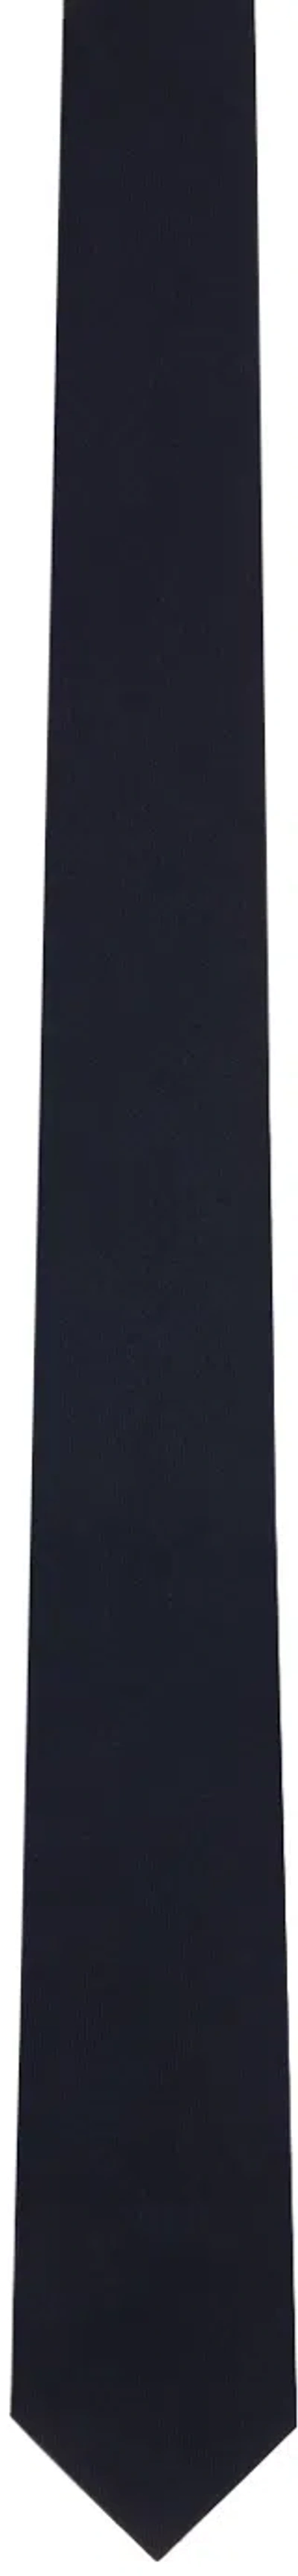 Thom Browne Navy Super 120s Twill Tie In 415 Navy